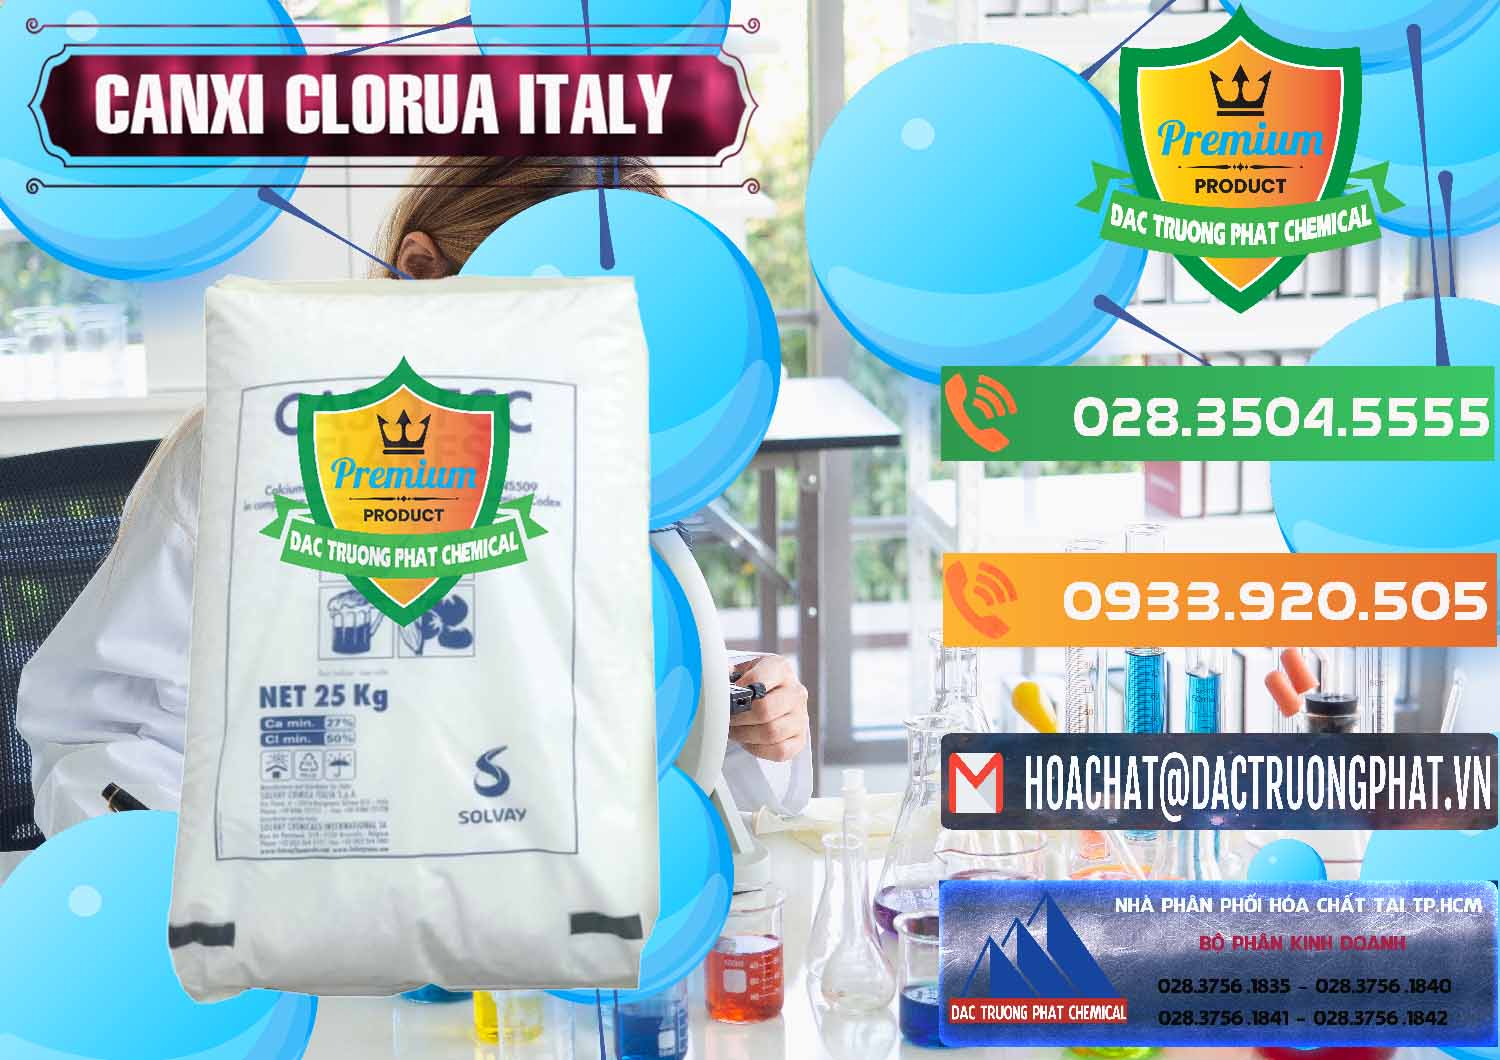 Cty bán & cung cấp CaCl2 – Canxi Clorua Food Grade Ý Italy - 0435 - Cty phân phối - cung ứng hóa chất tại TP.HCM - hoachatxulynuoc.com.vn